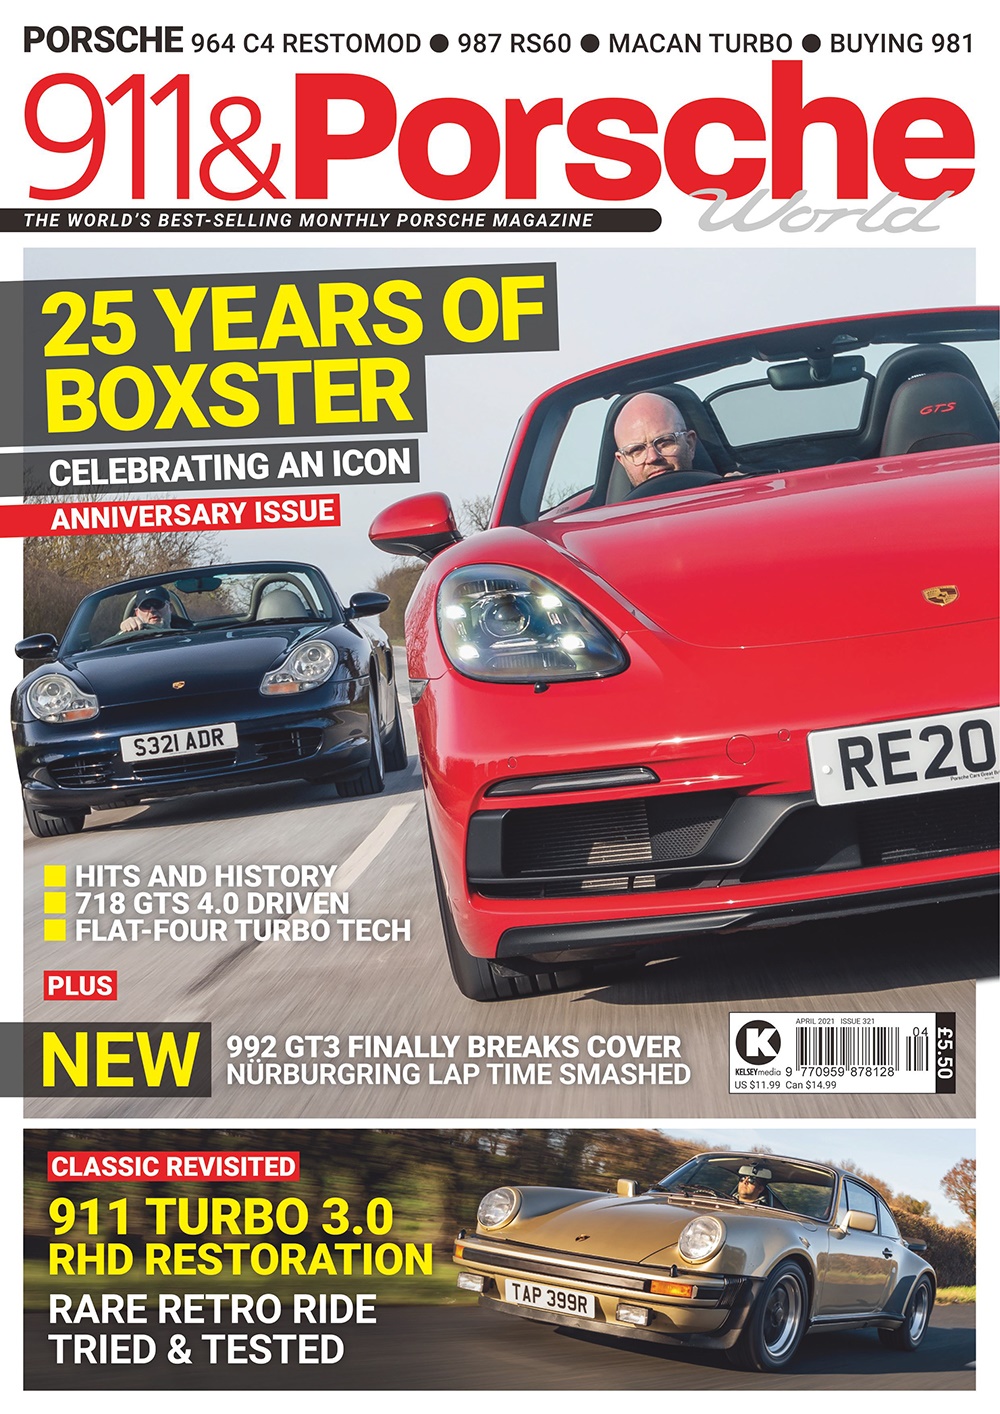 911 & Porsche World Issue 321 - April 2021